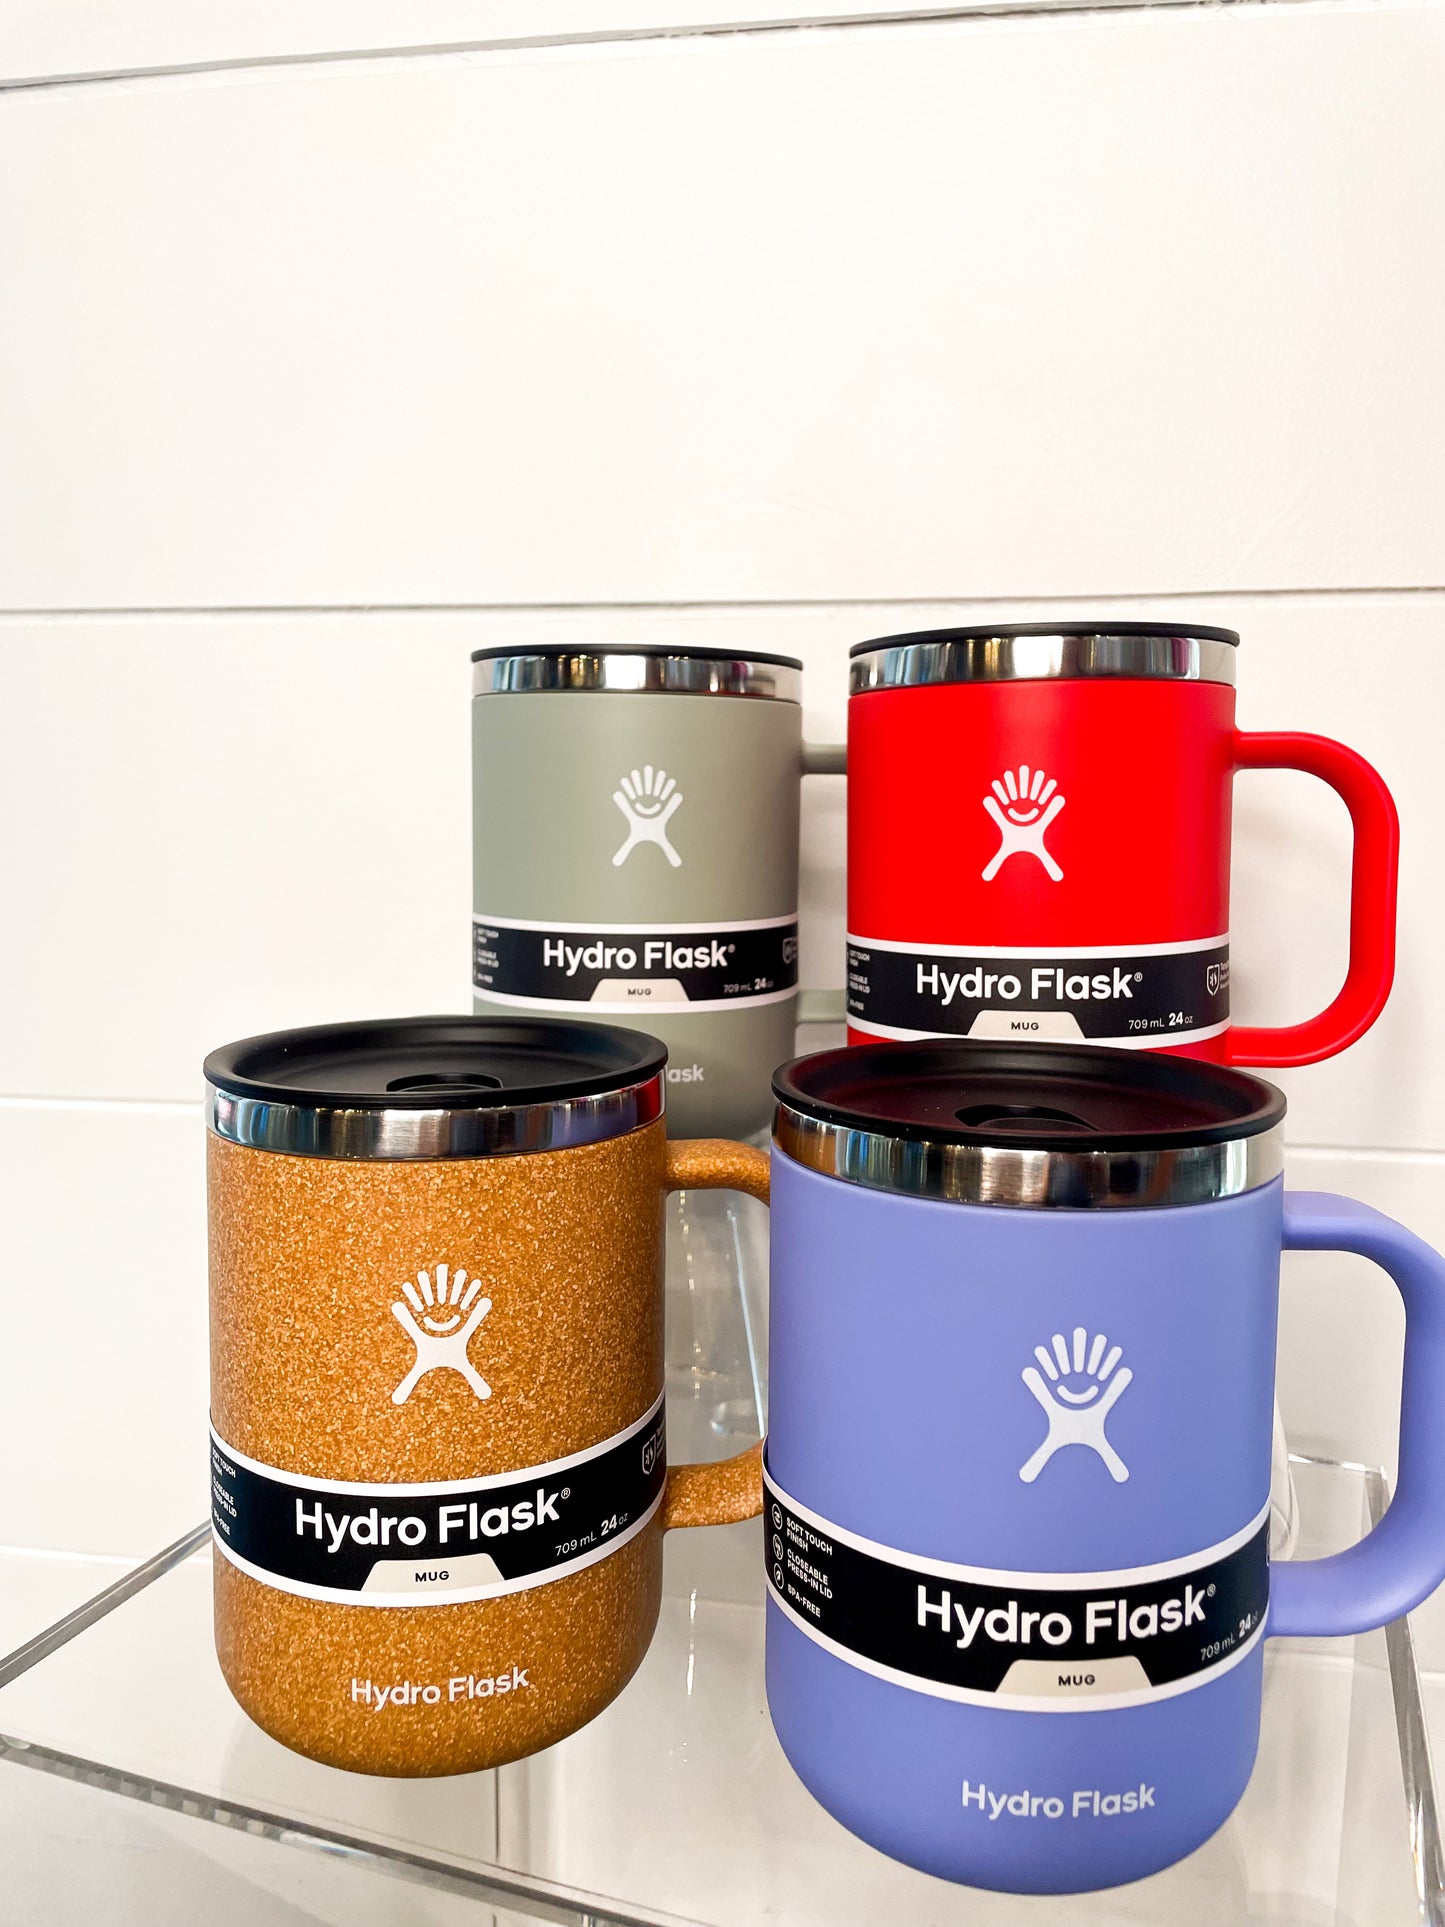 Hydro Flask 6oz Coffee Mug – The Backpacker